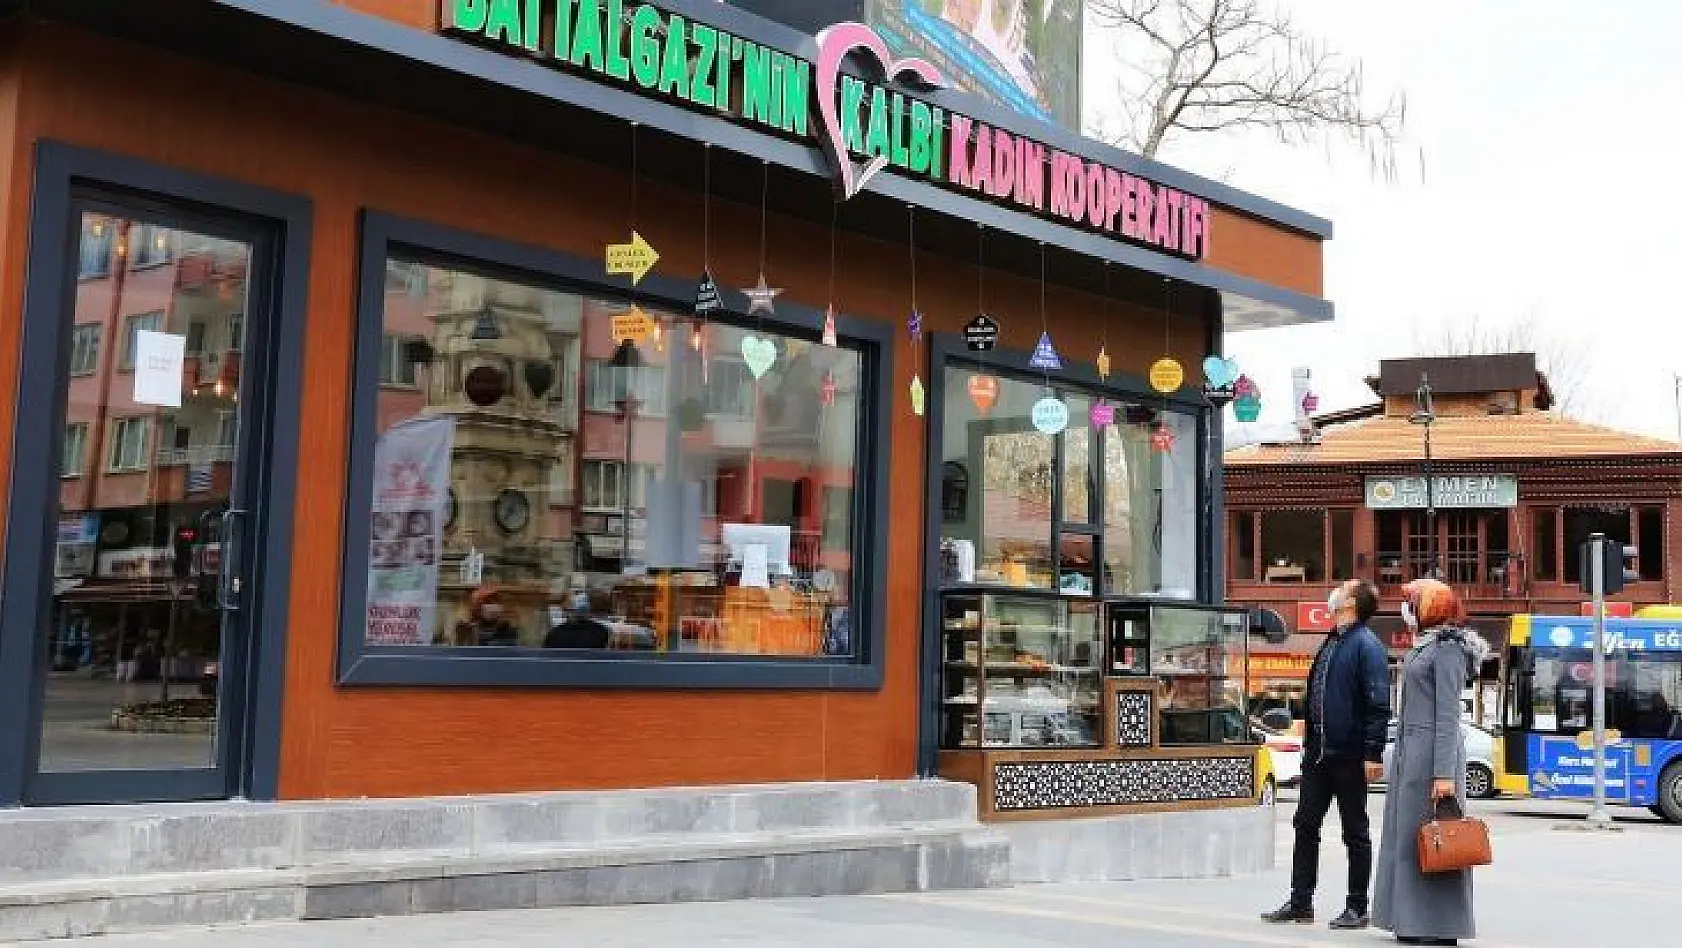 Battalgazi'nin Kalbi Kadın Kooperatifi Kafe Market büyük ilgi görüyor